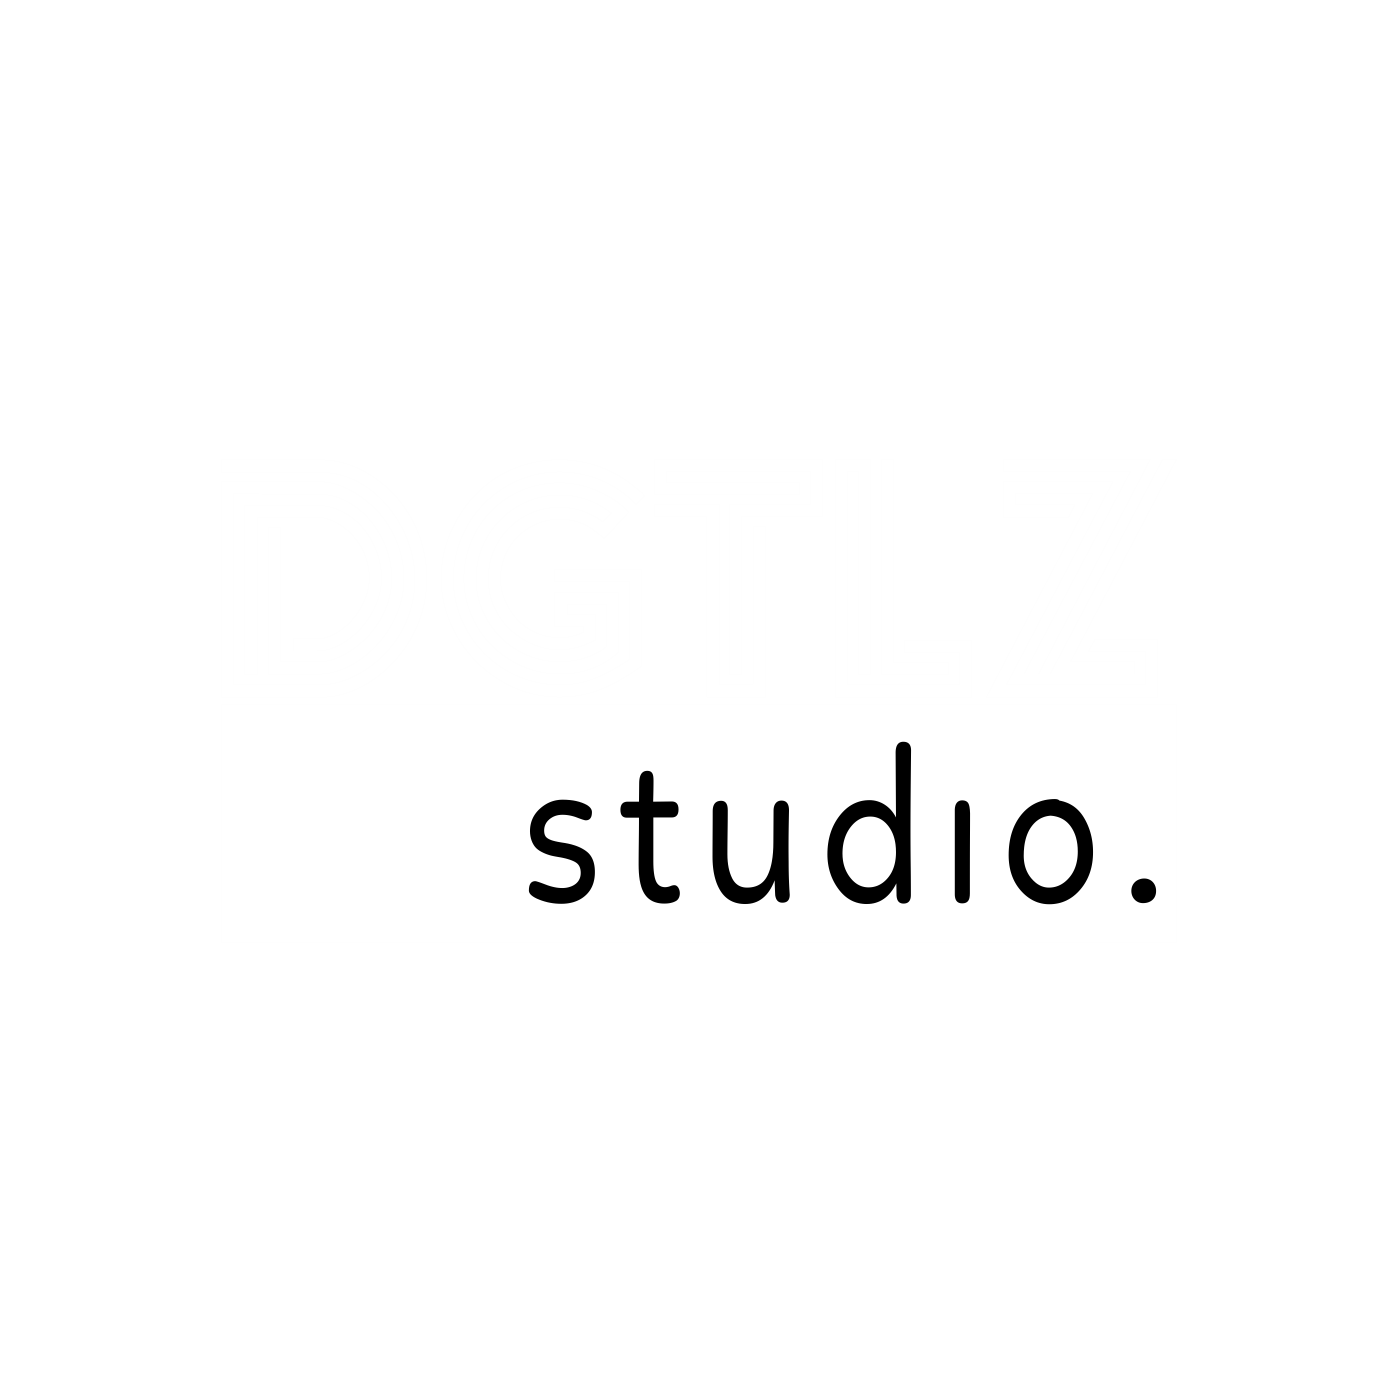 DGTLZ Studio